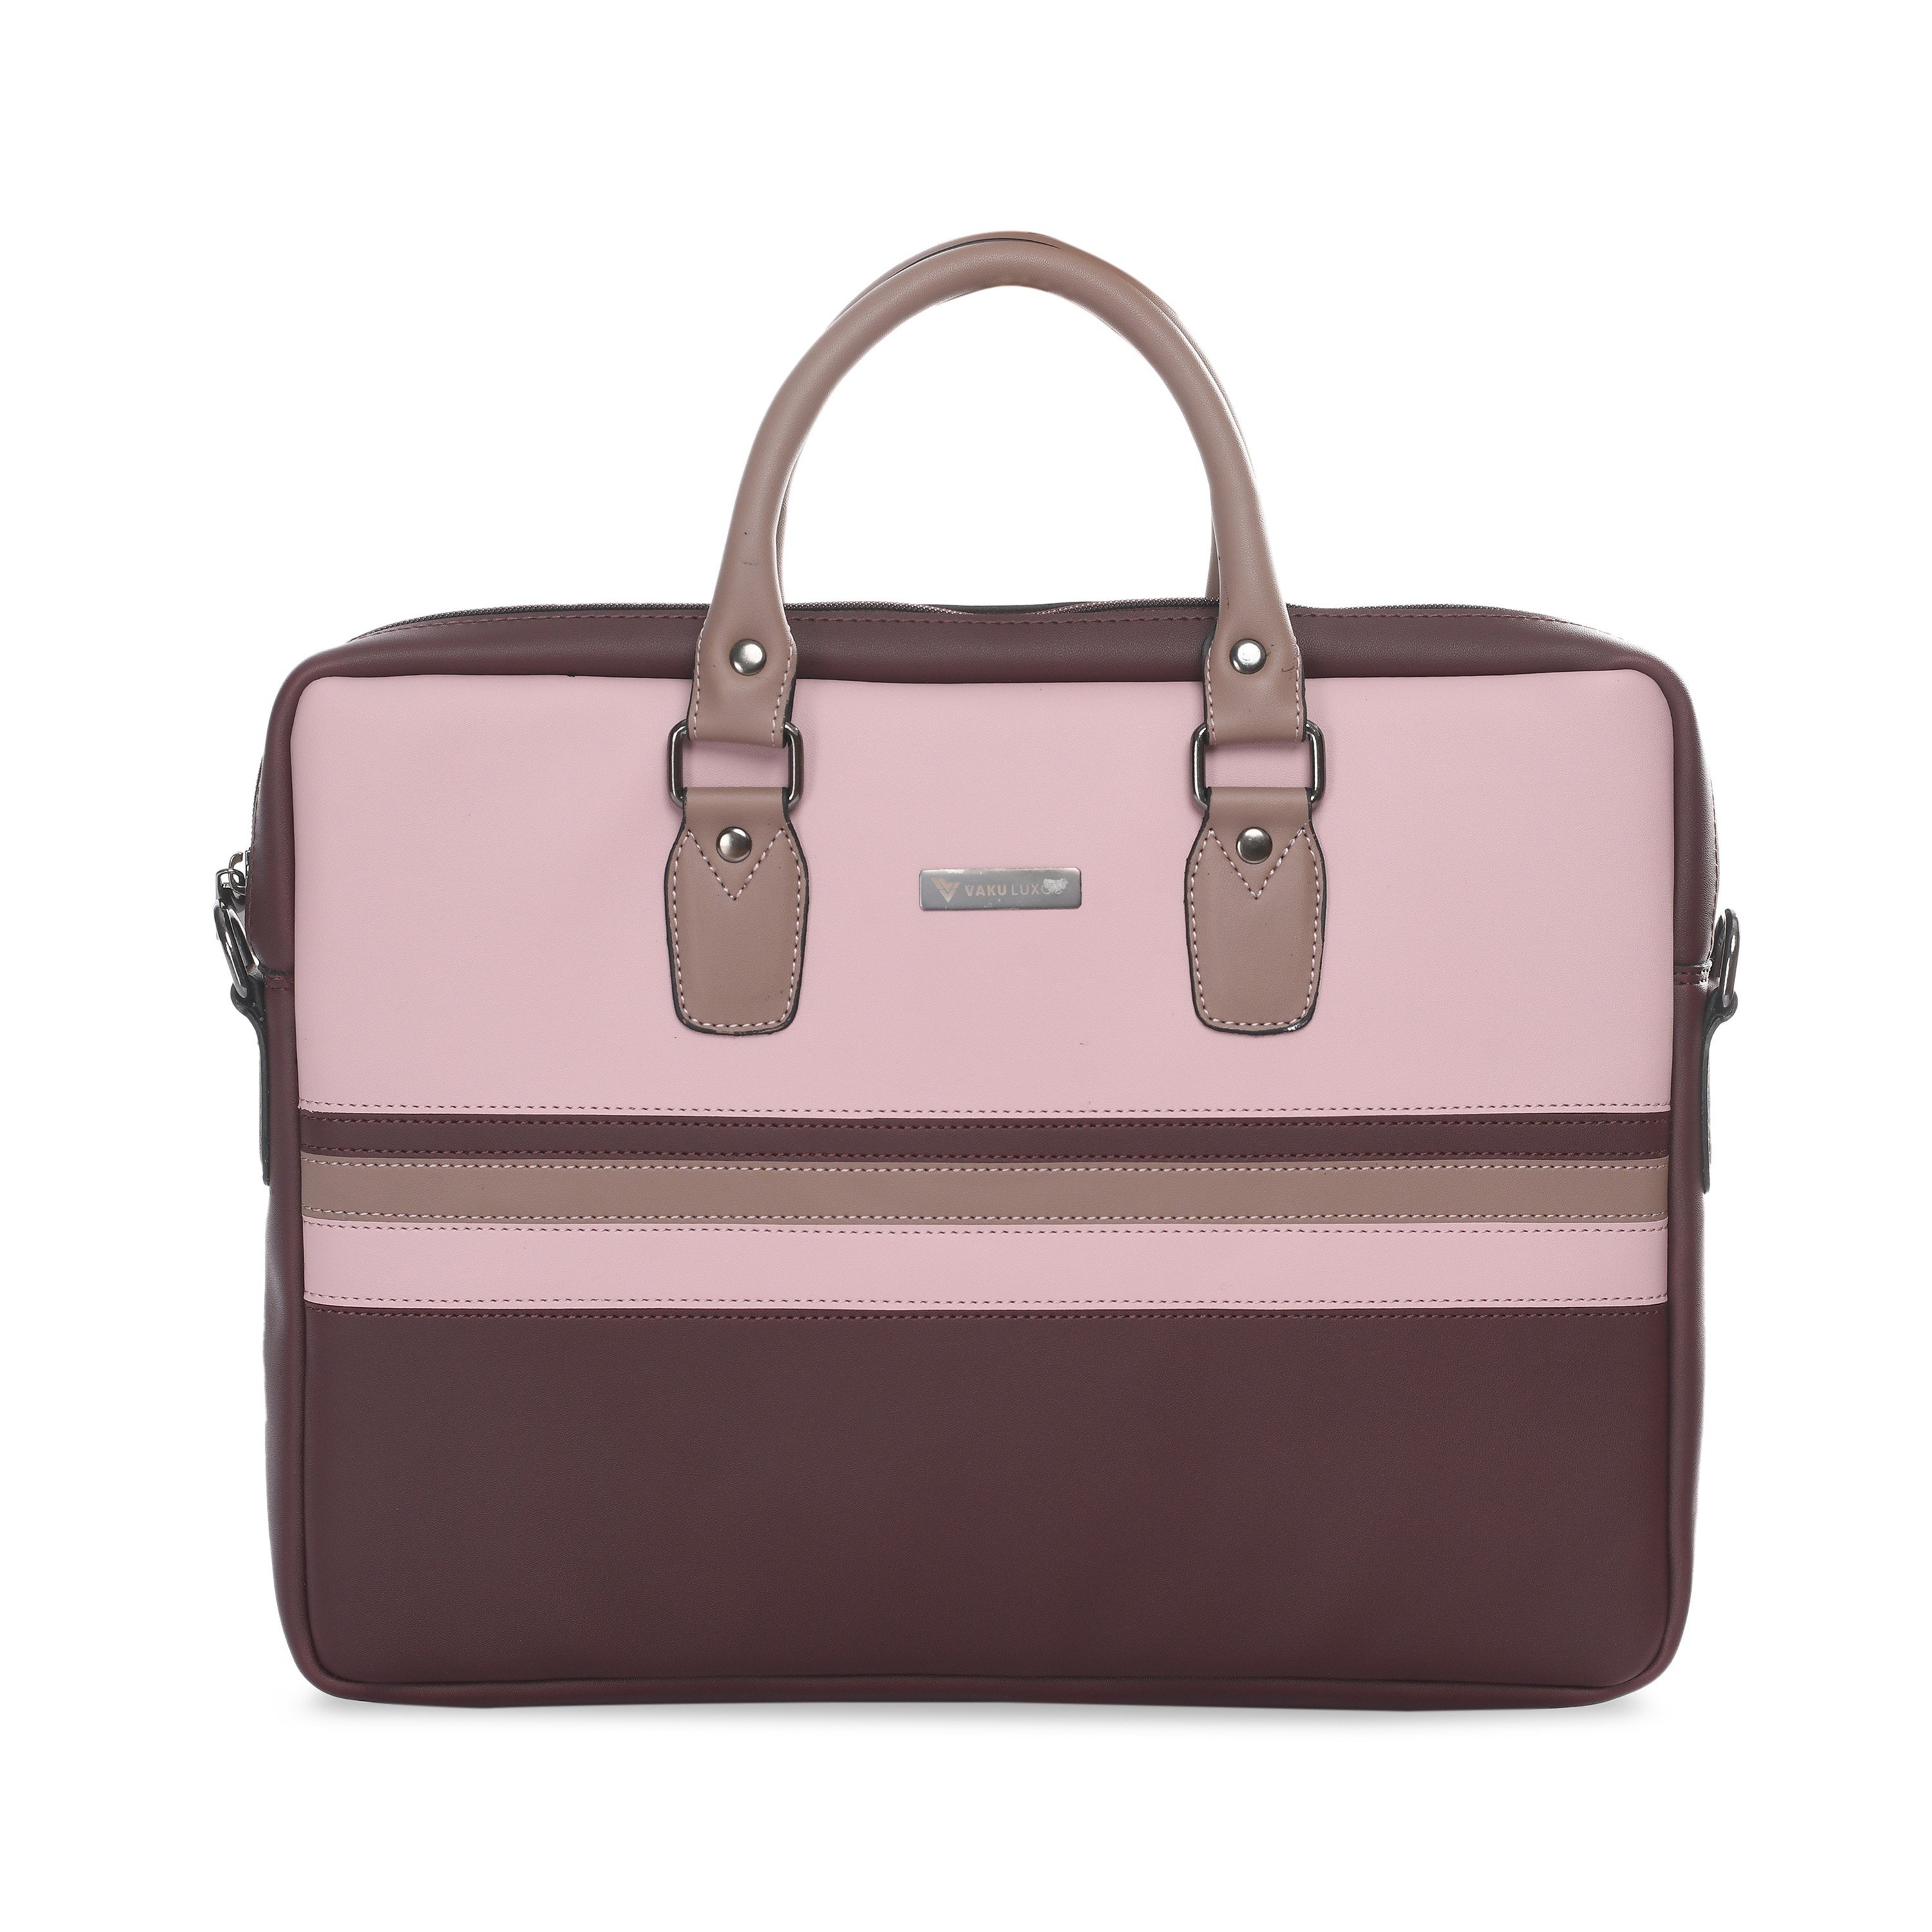 Vaku Luxos ® Vuitton Series Laptop Messenger Bag